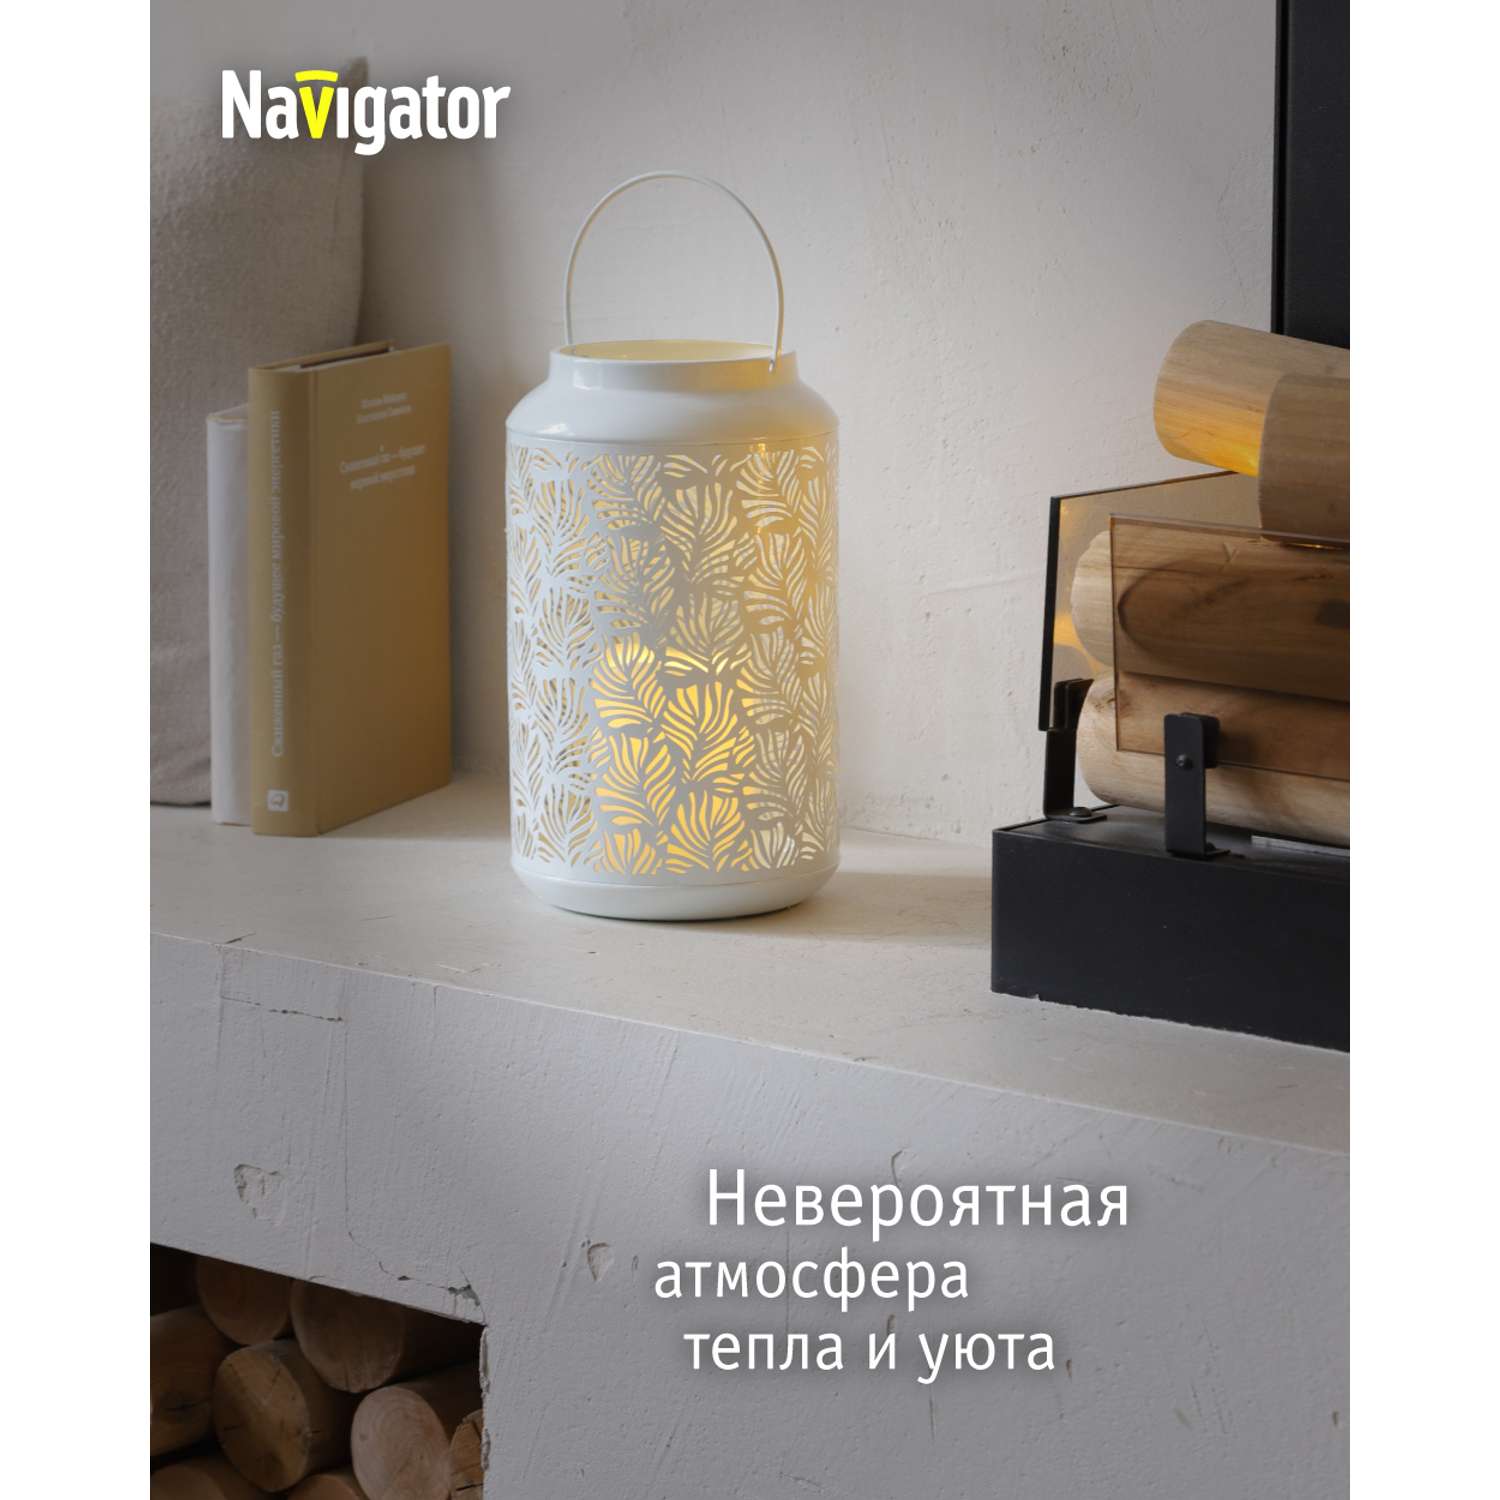 Декоративный светильник-ночник NaVigator светодиодный для детской комнаты узор флора - фото 2